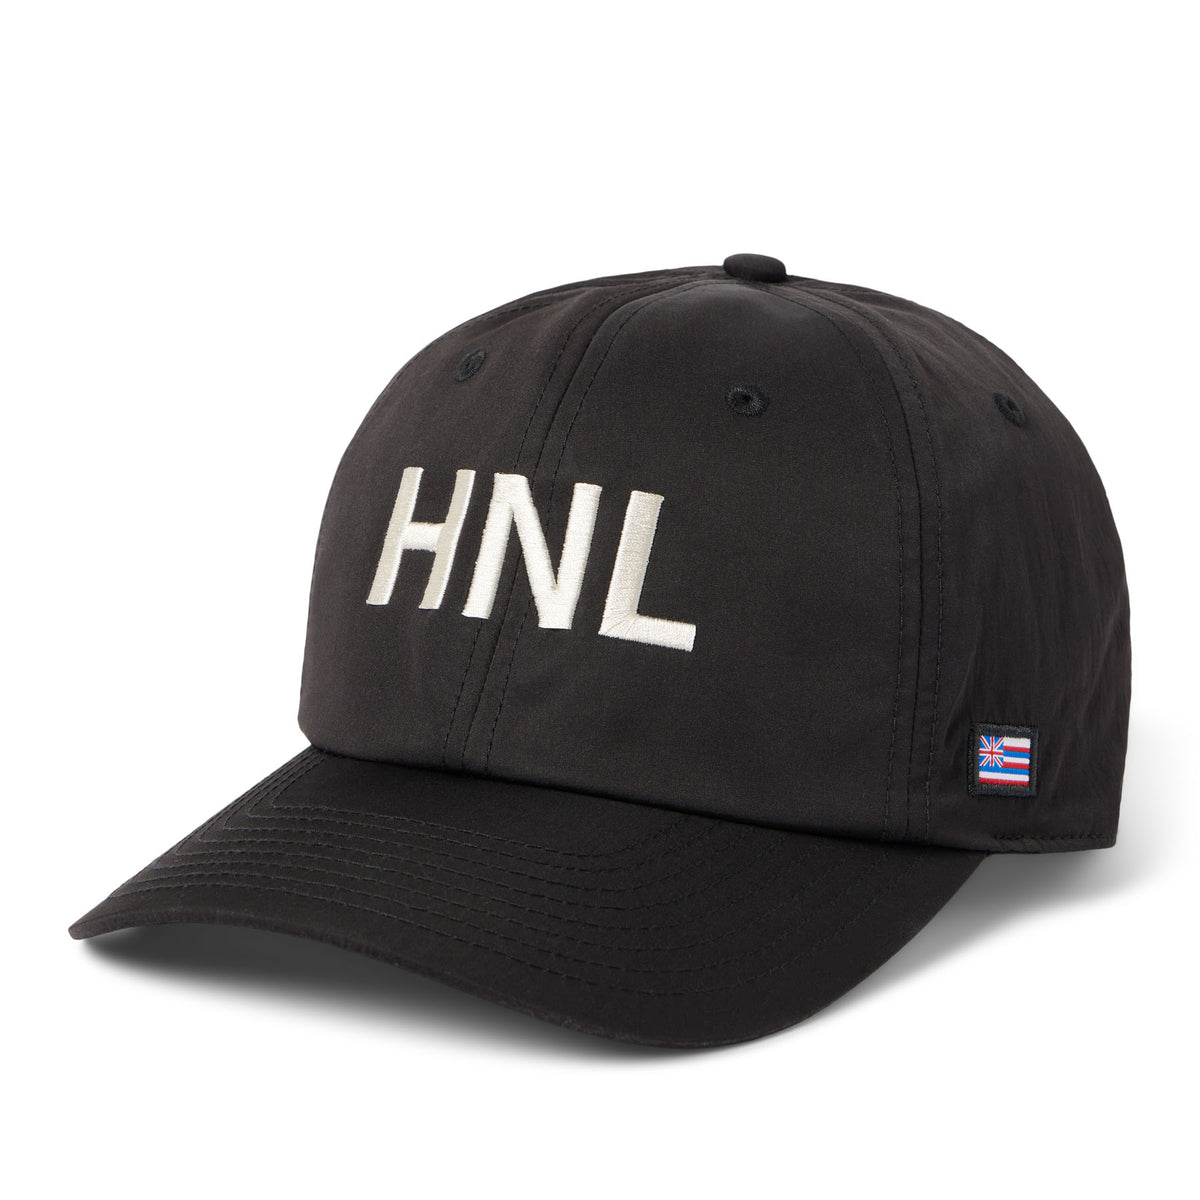 THE HNL HAT / 100% Nylon – Reyn Spooner